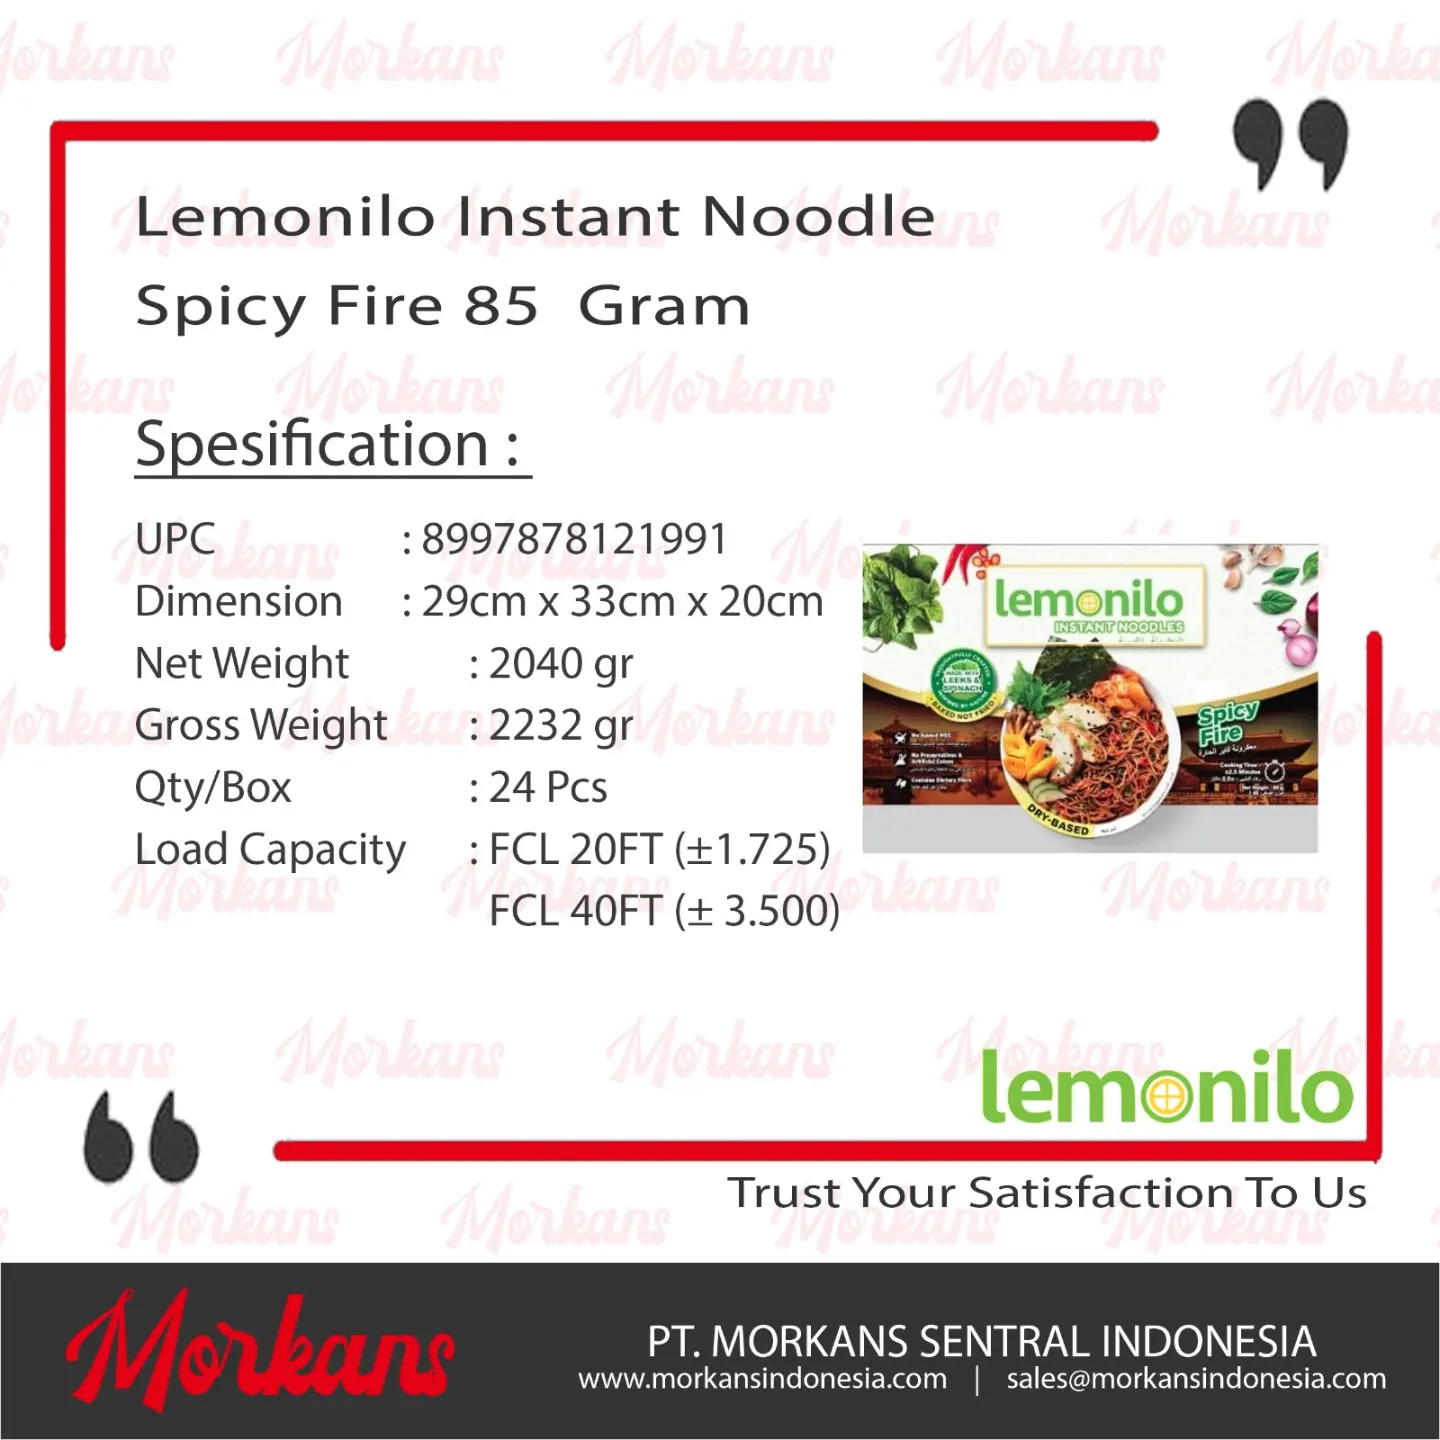 Lemonilo Instant Noodles